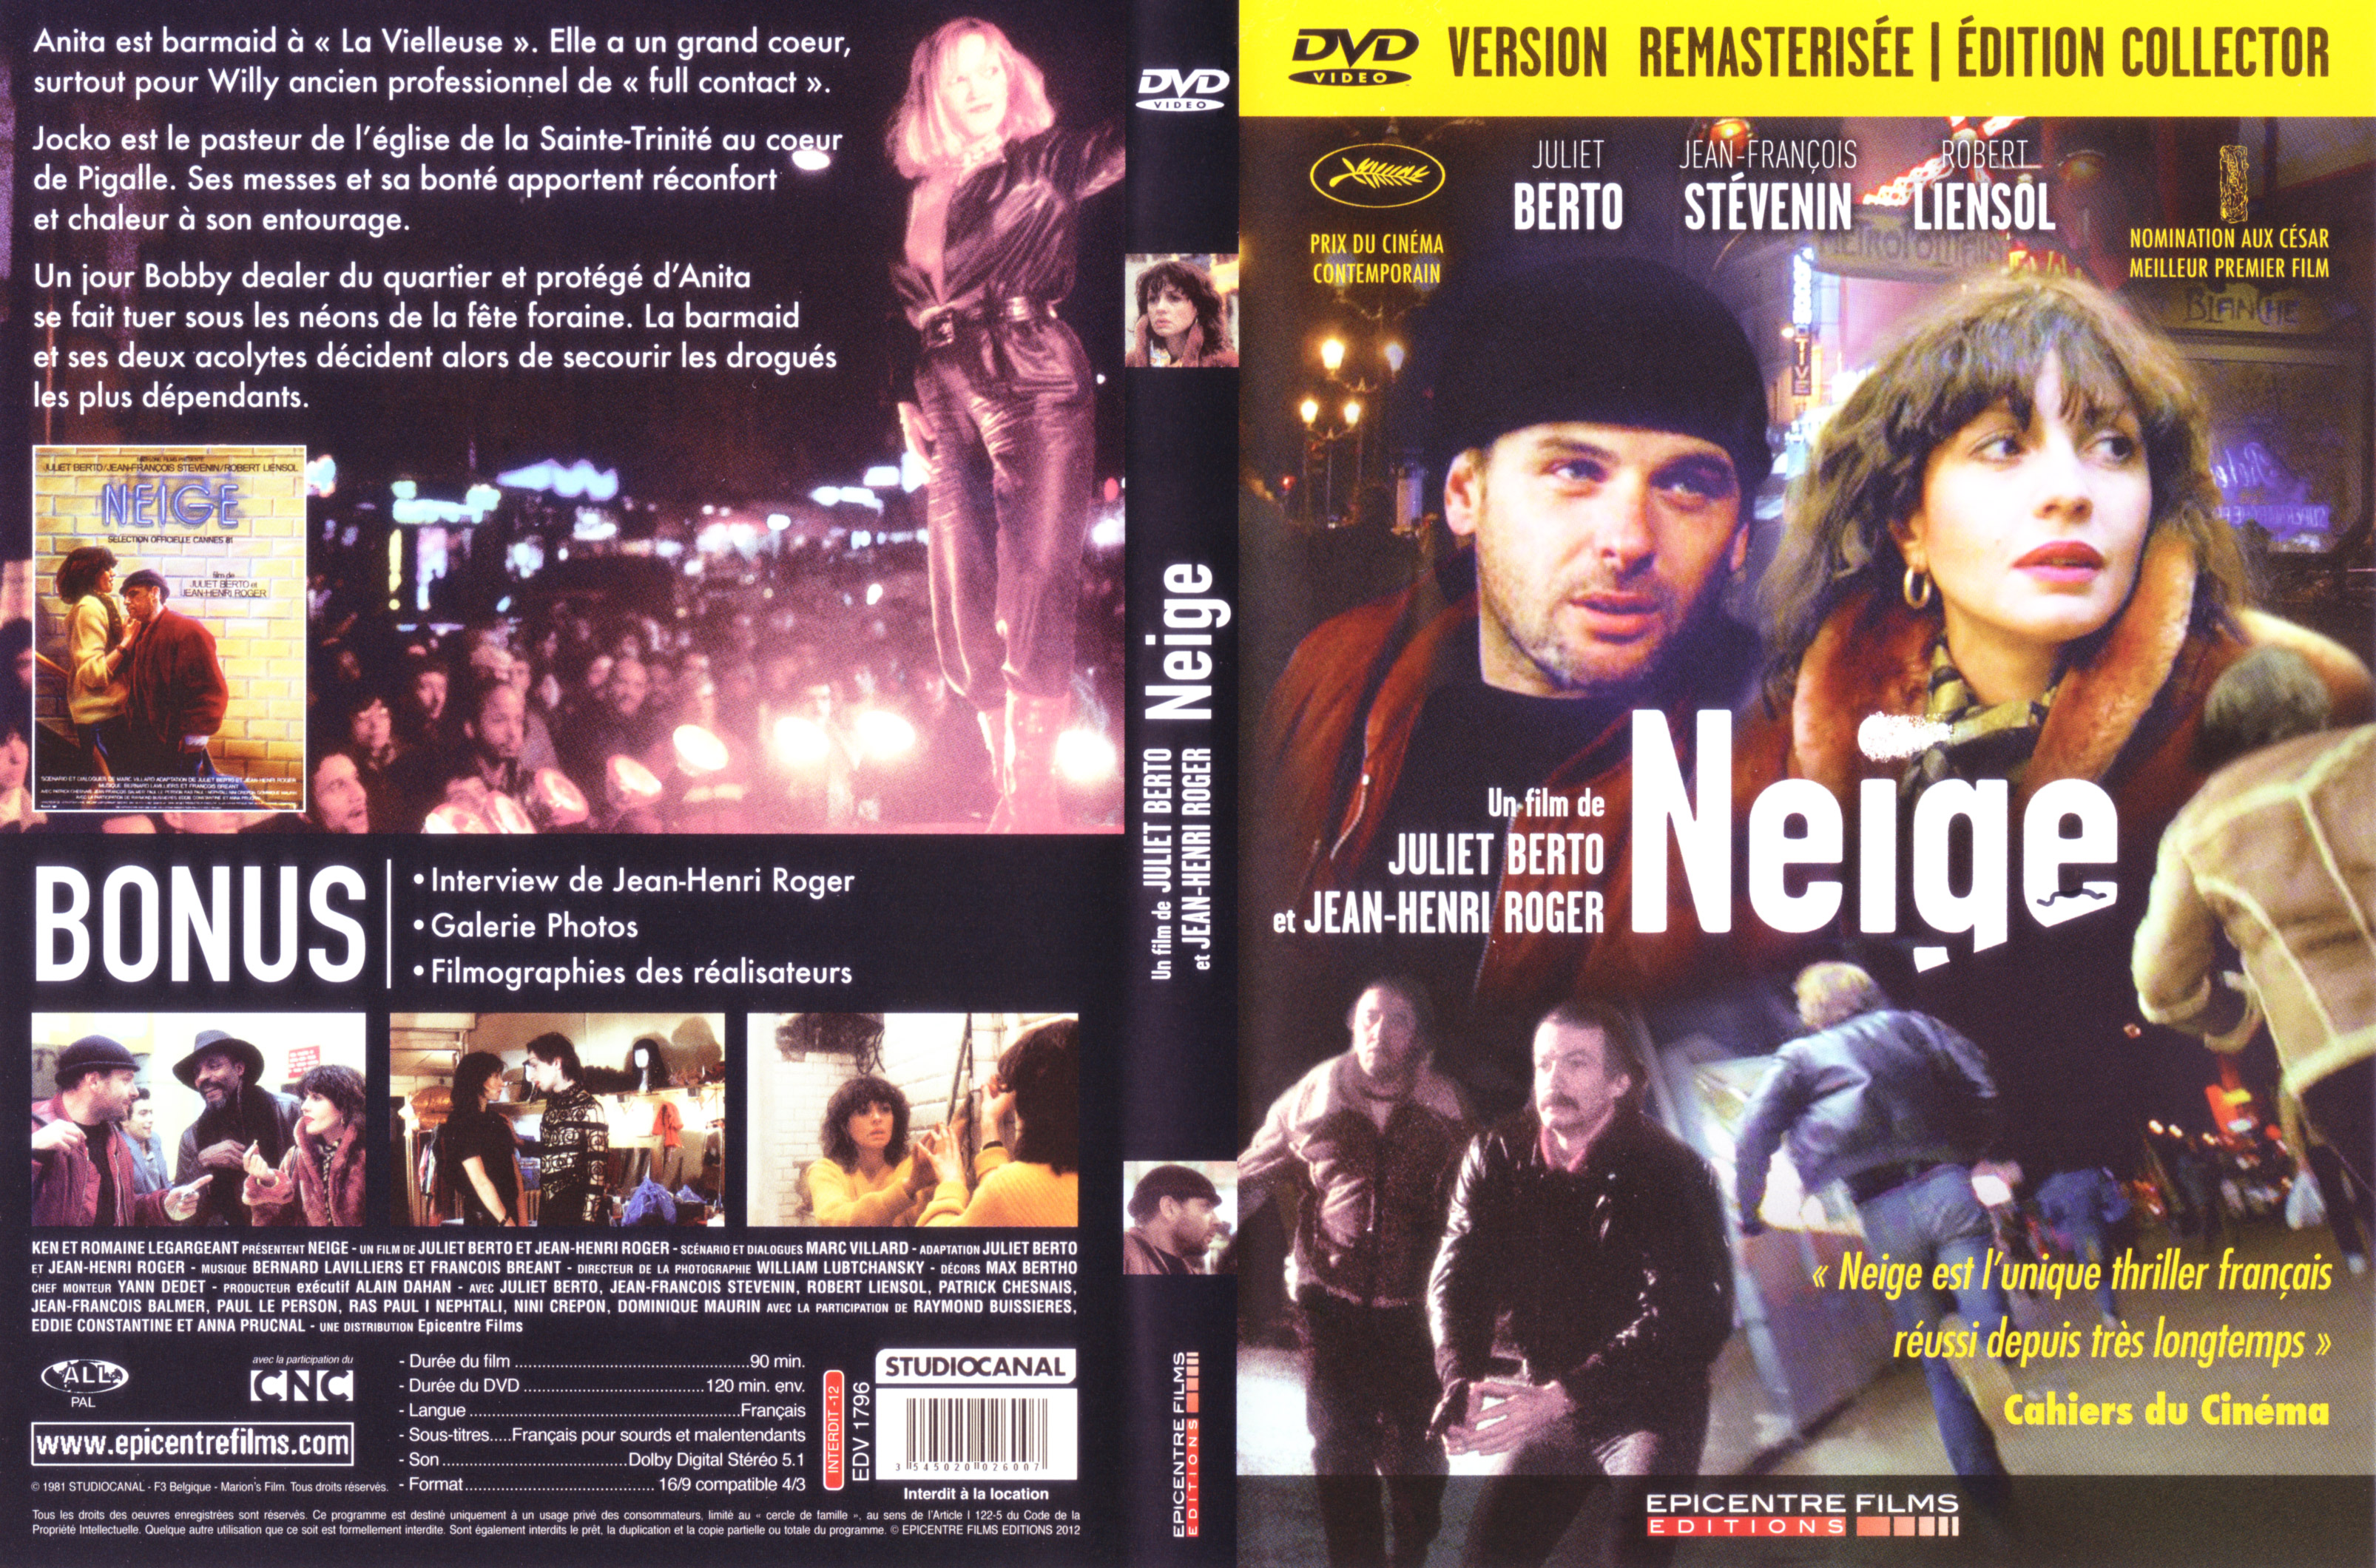 Jaquette DVD Neige